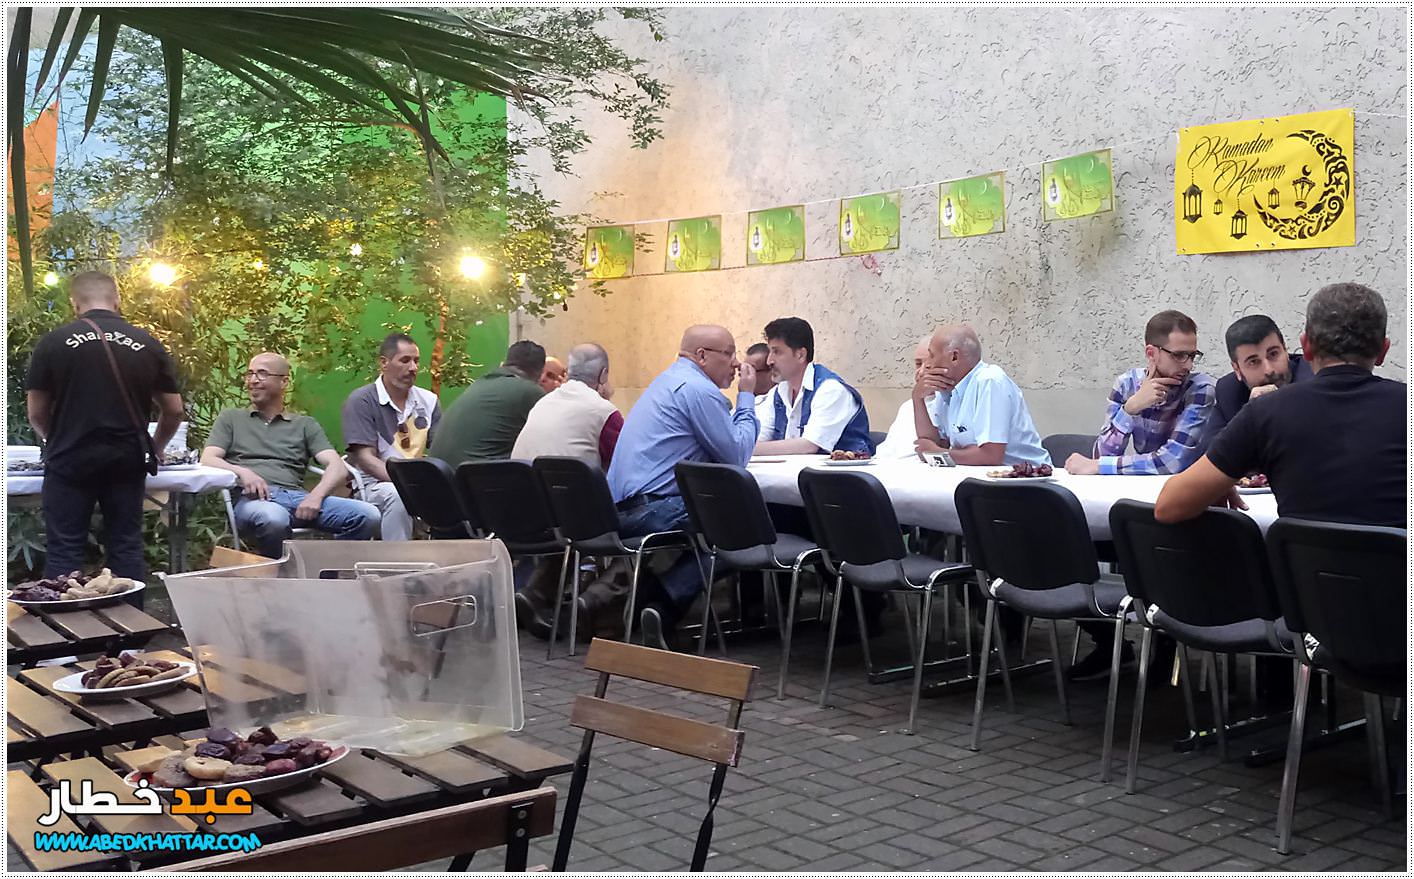 ألمانيا ينظم مأدبة إفطار لأبناء الجالية الفلسطينية و العربية في برلين